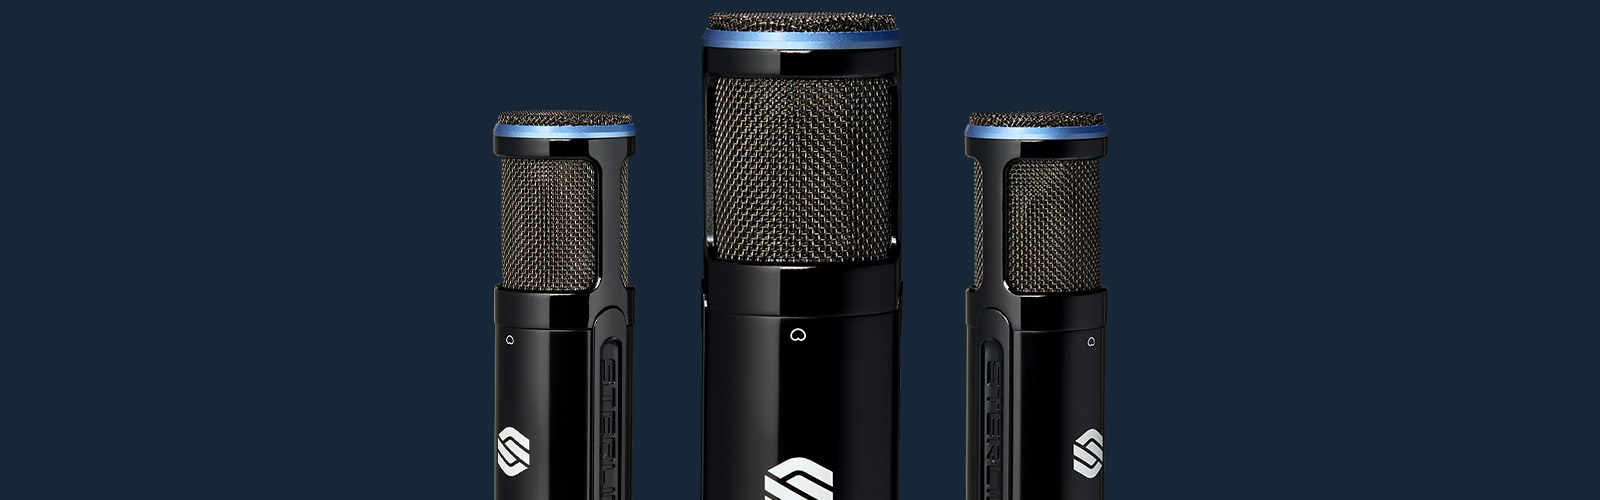 3 Sterling SP150SMK studio condenser microphones on blue background.